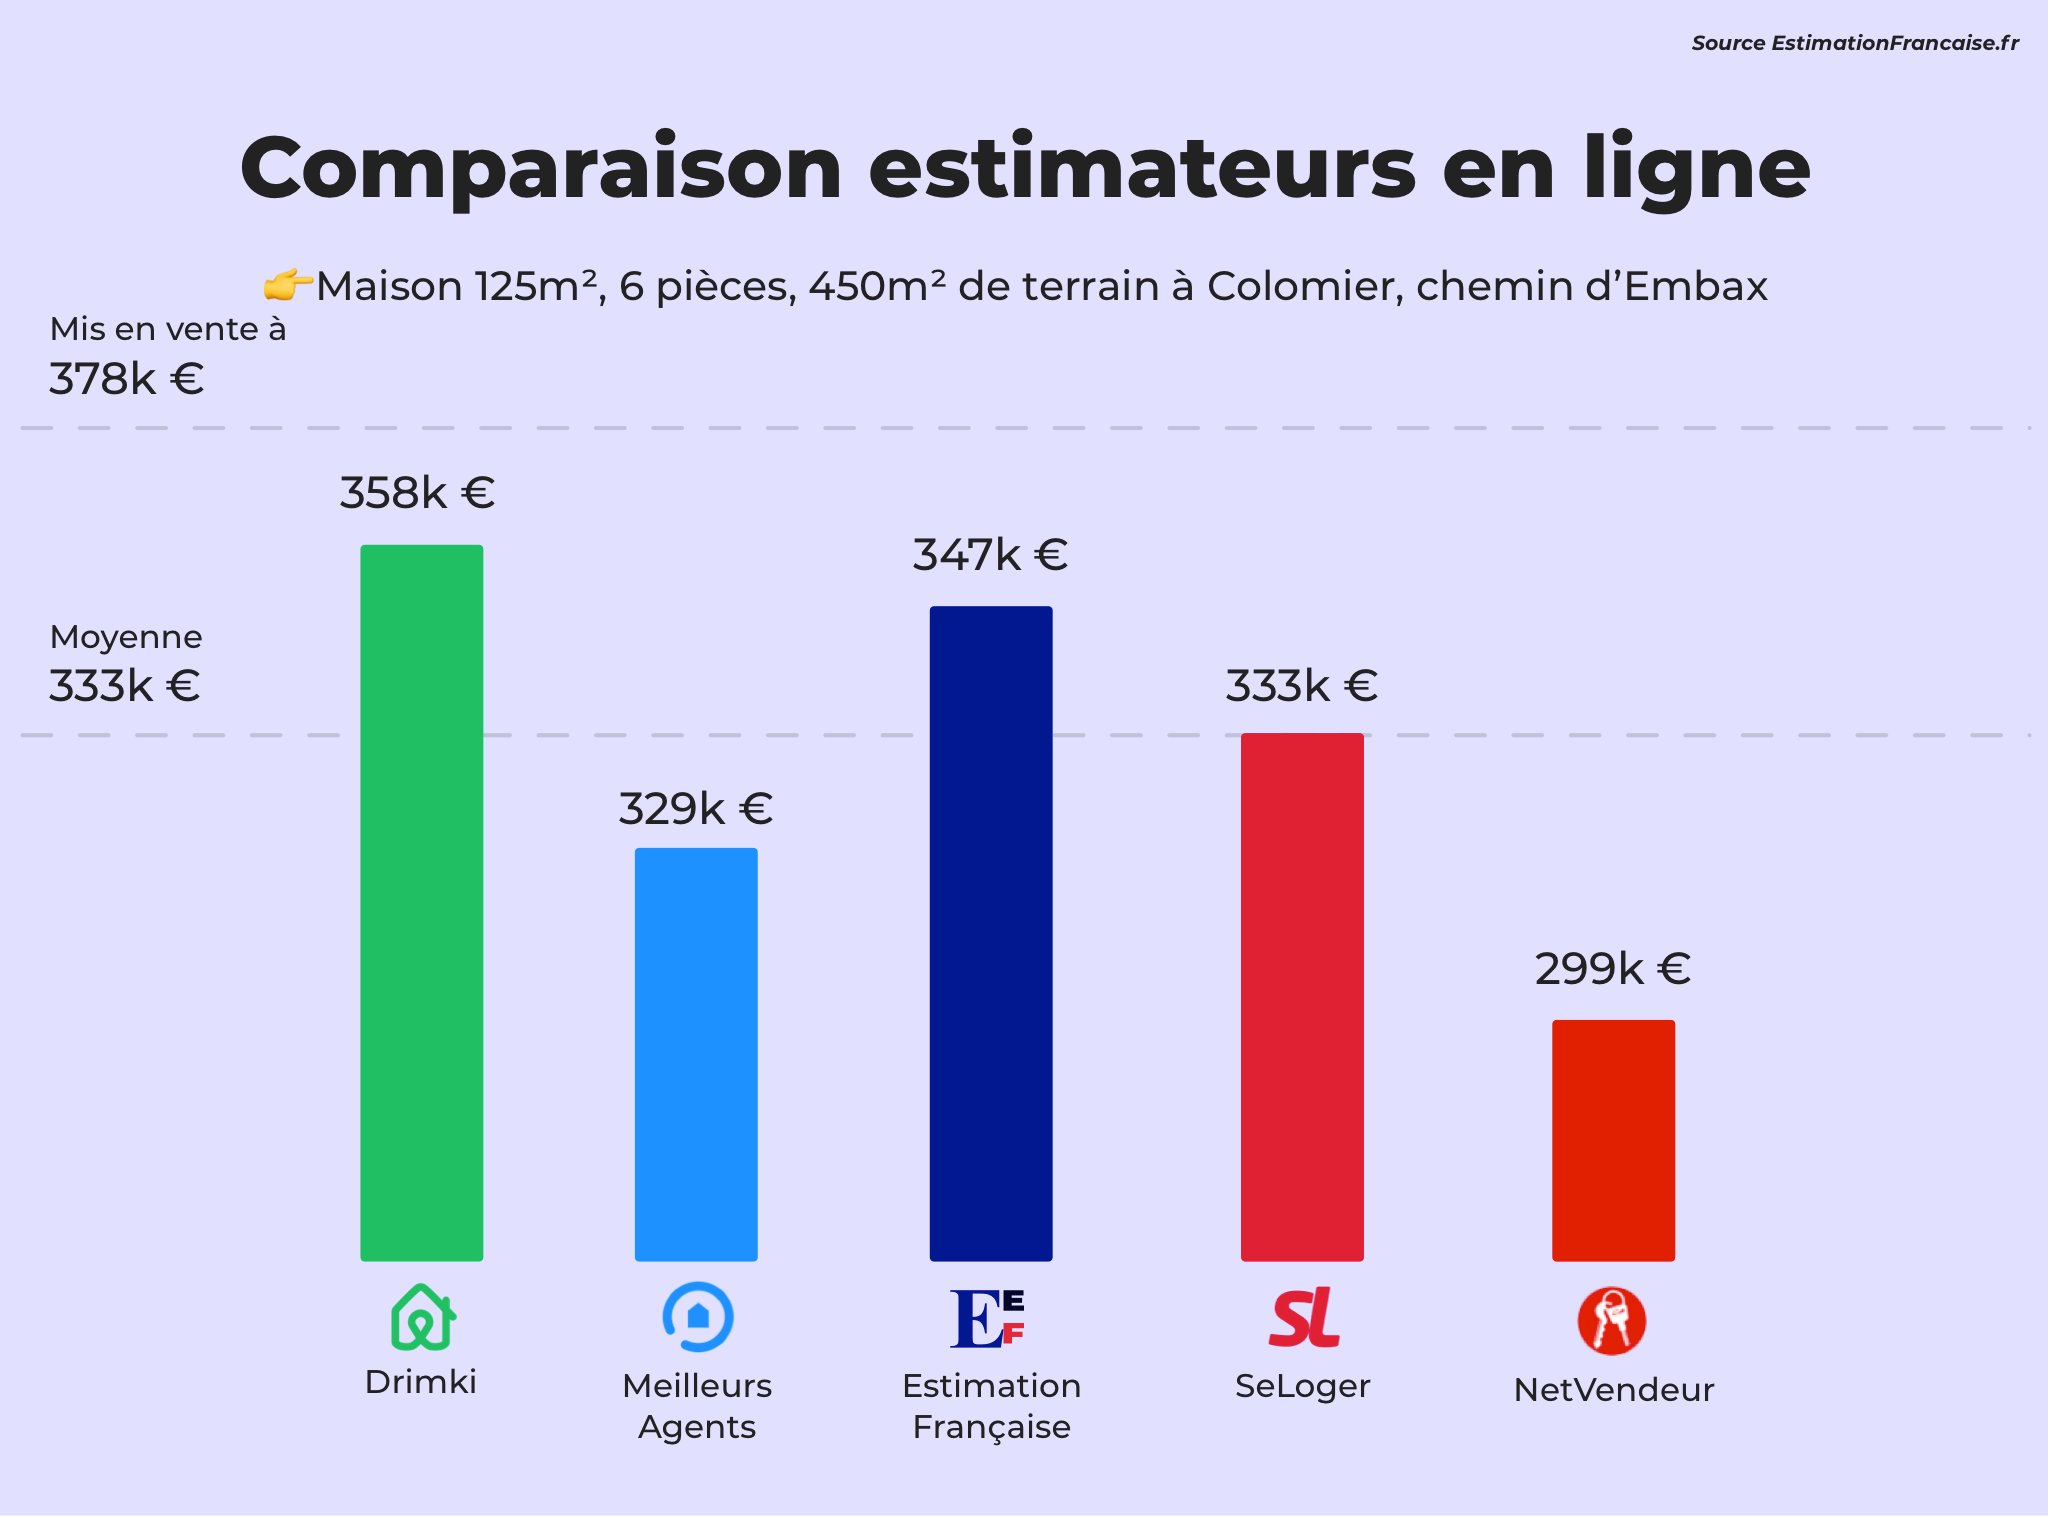 Drimki estimation comparaison pour une maison vers Toulouse